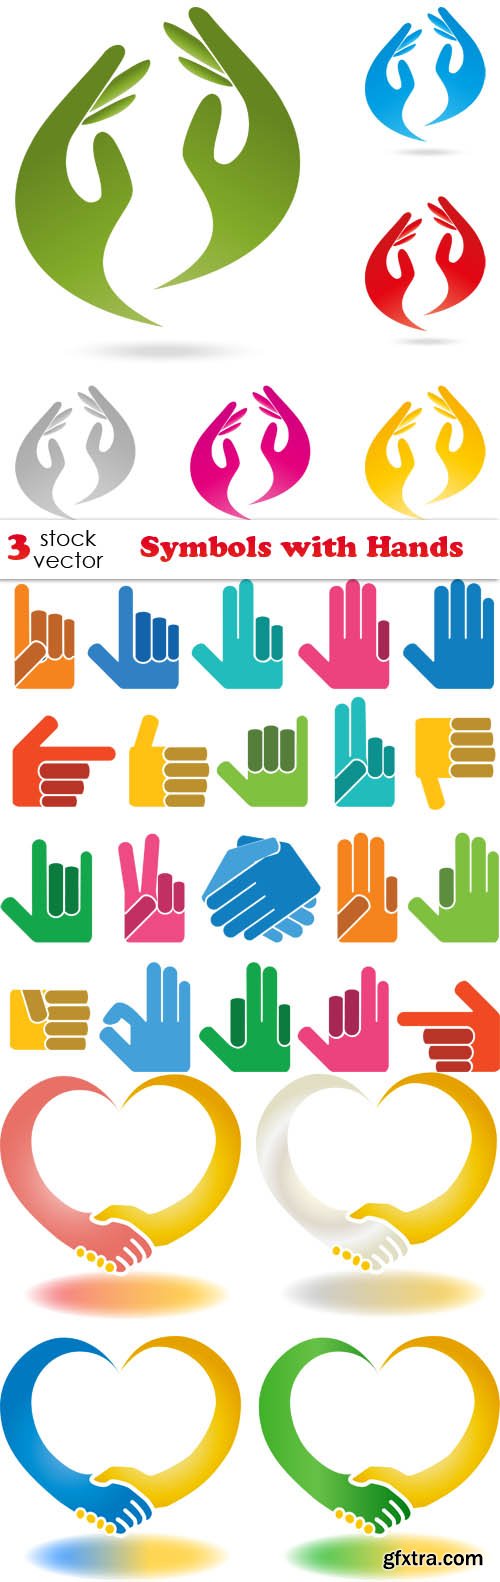 Vectors - Symbols with Hands